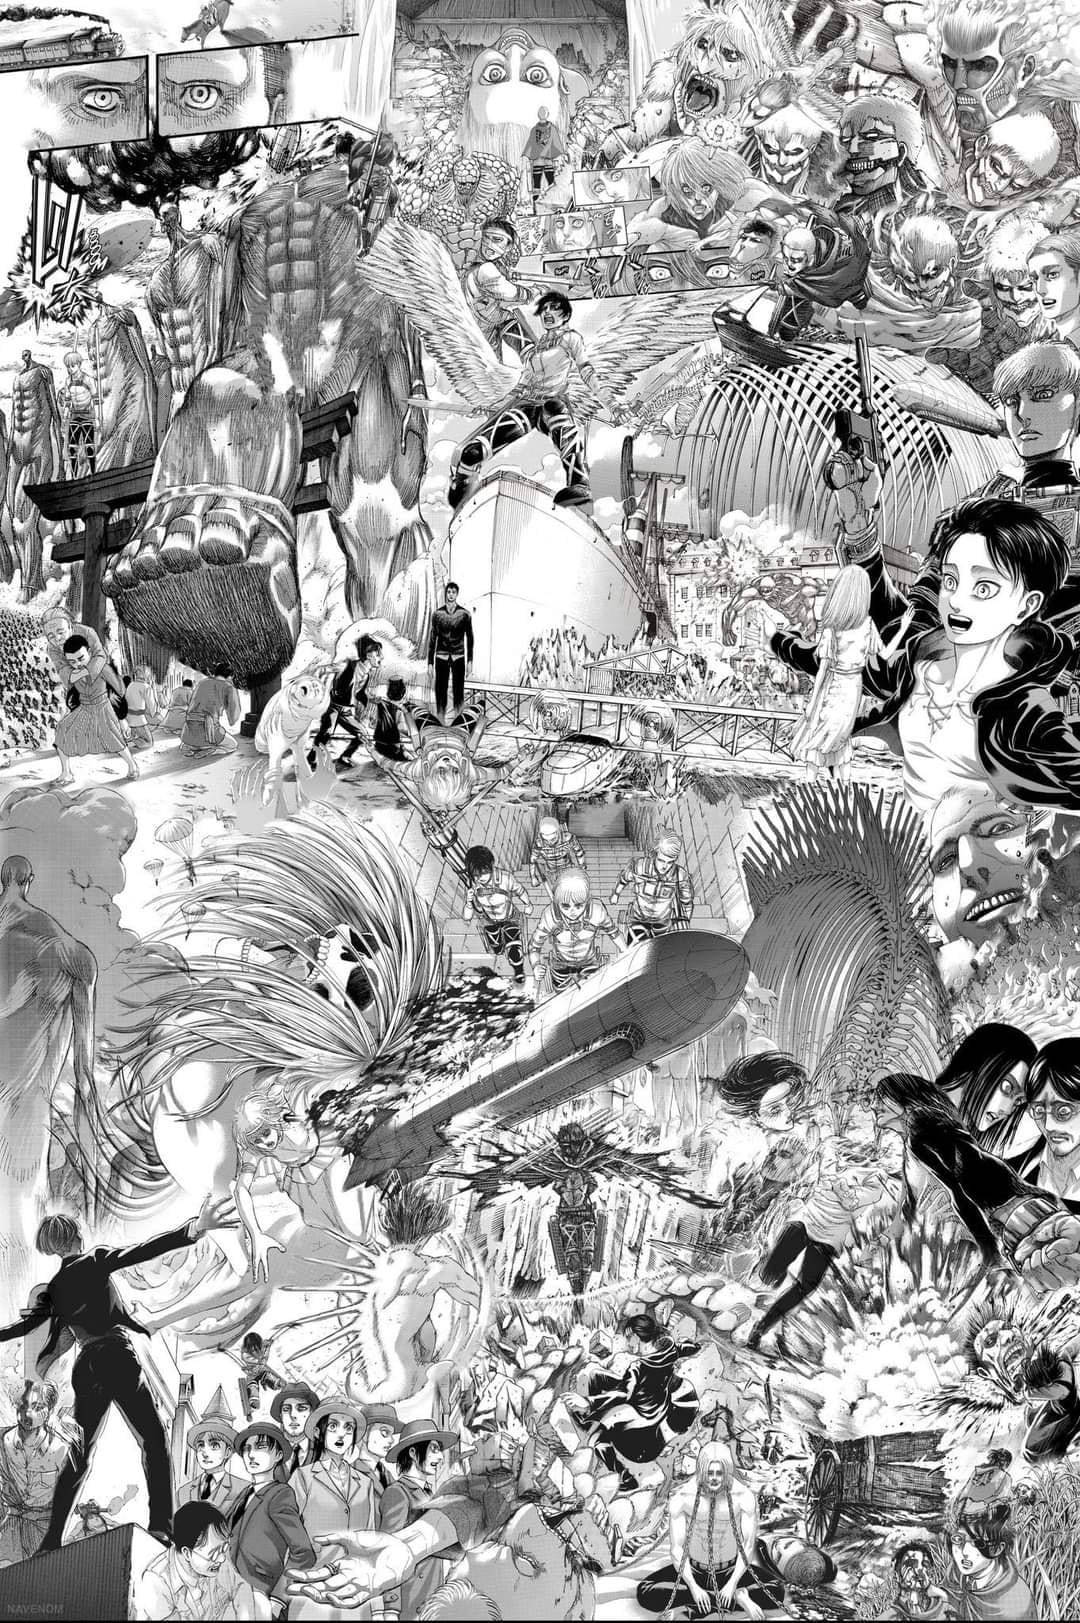 Aot Manga Image Collage Background